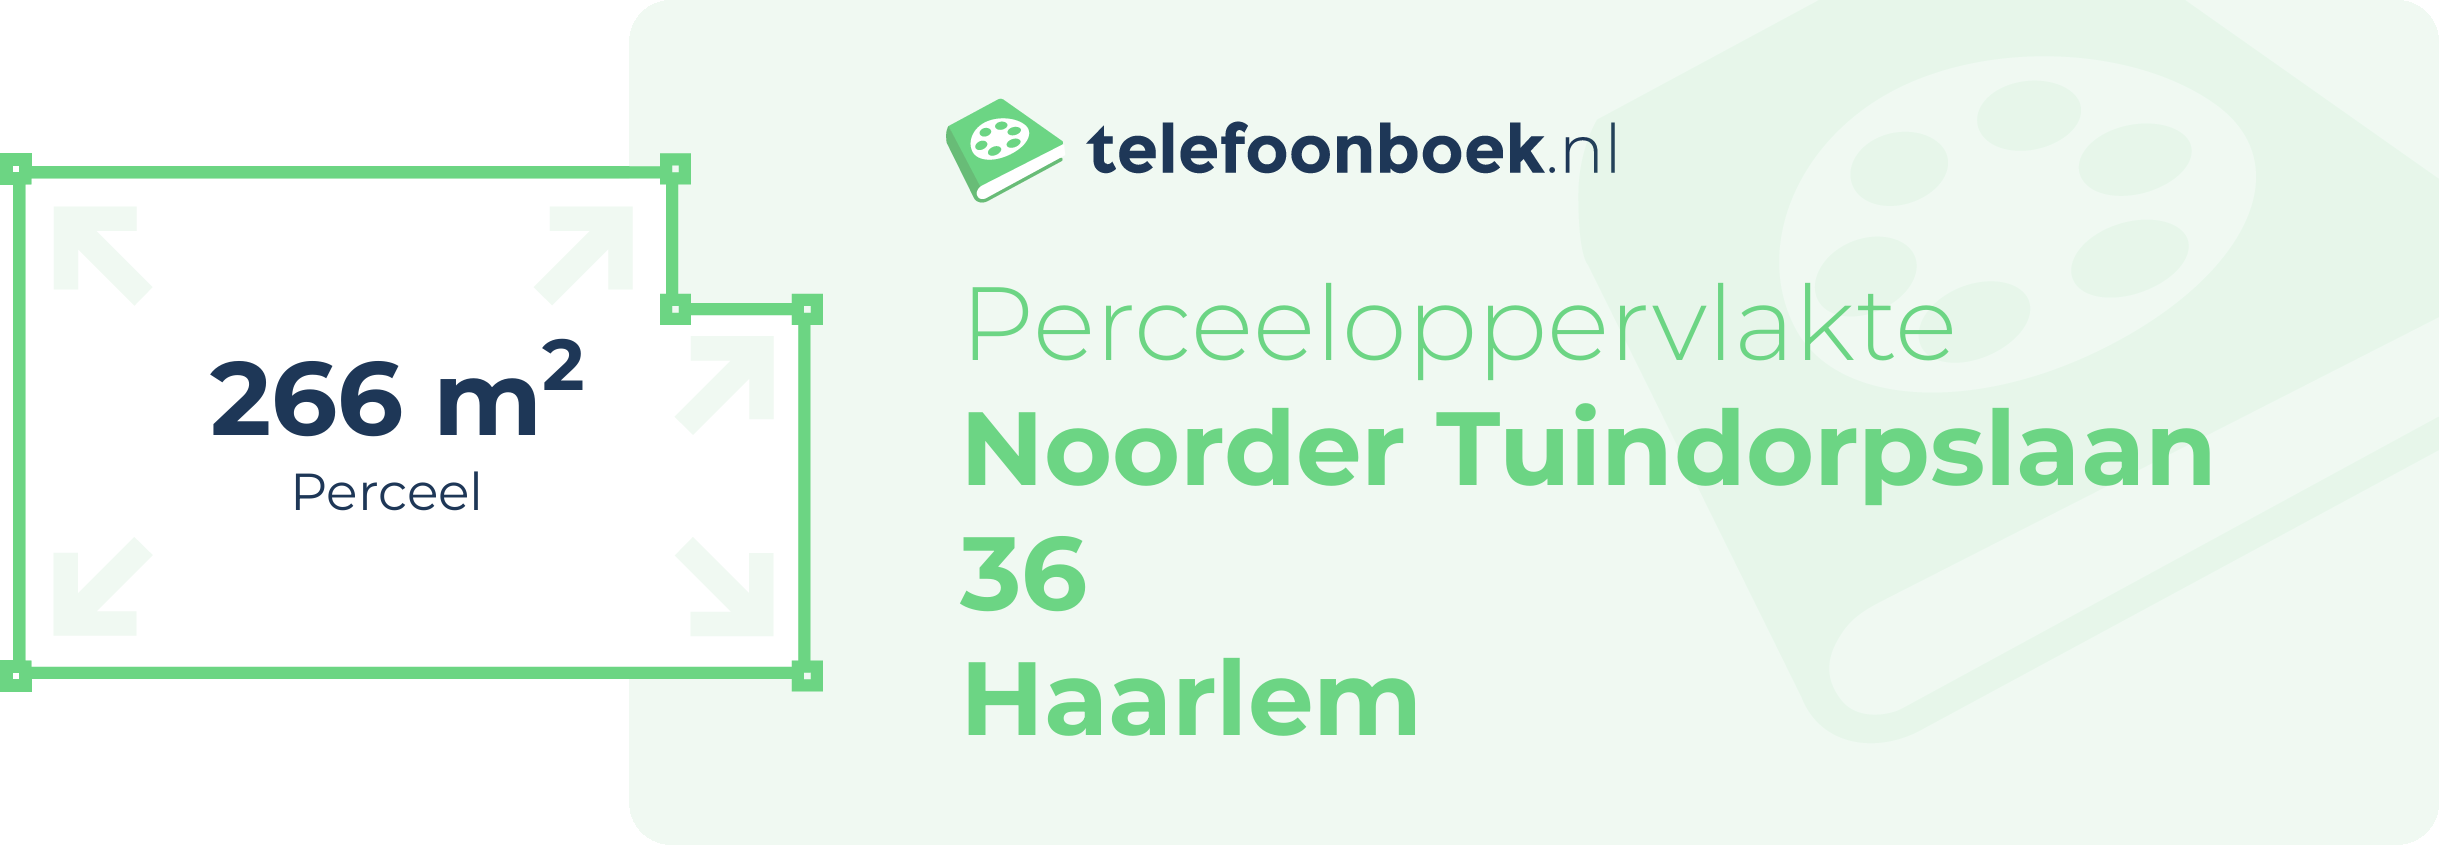 Perceeloppervlakte Noorder Tuindorpslaan 36 Haarlem